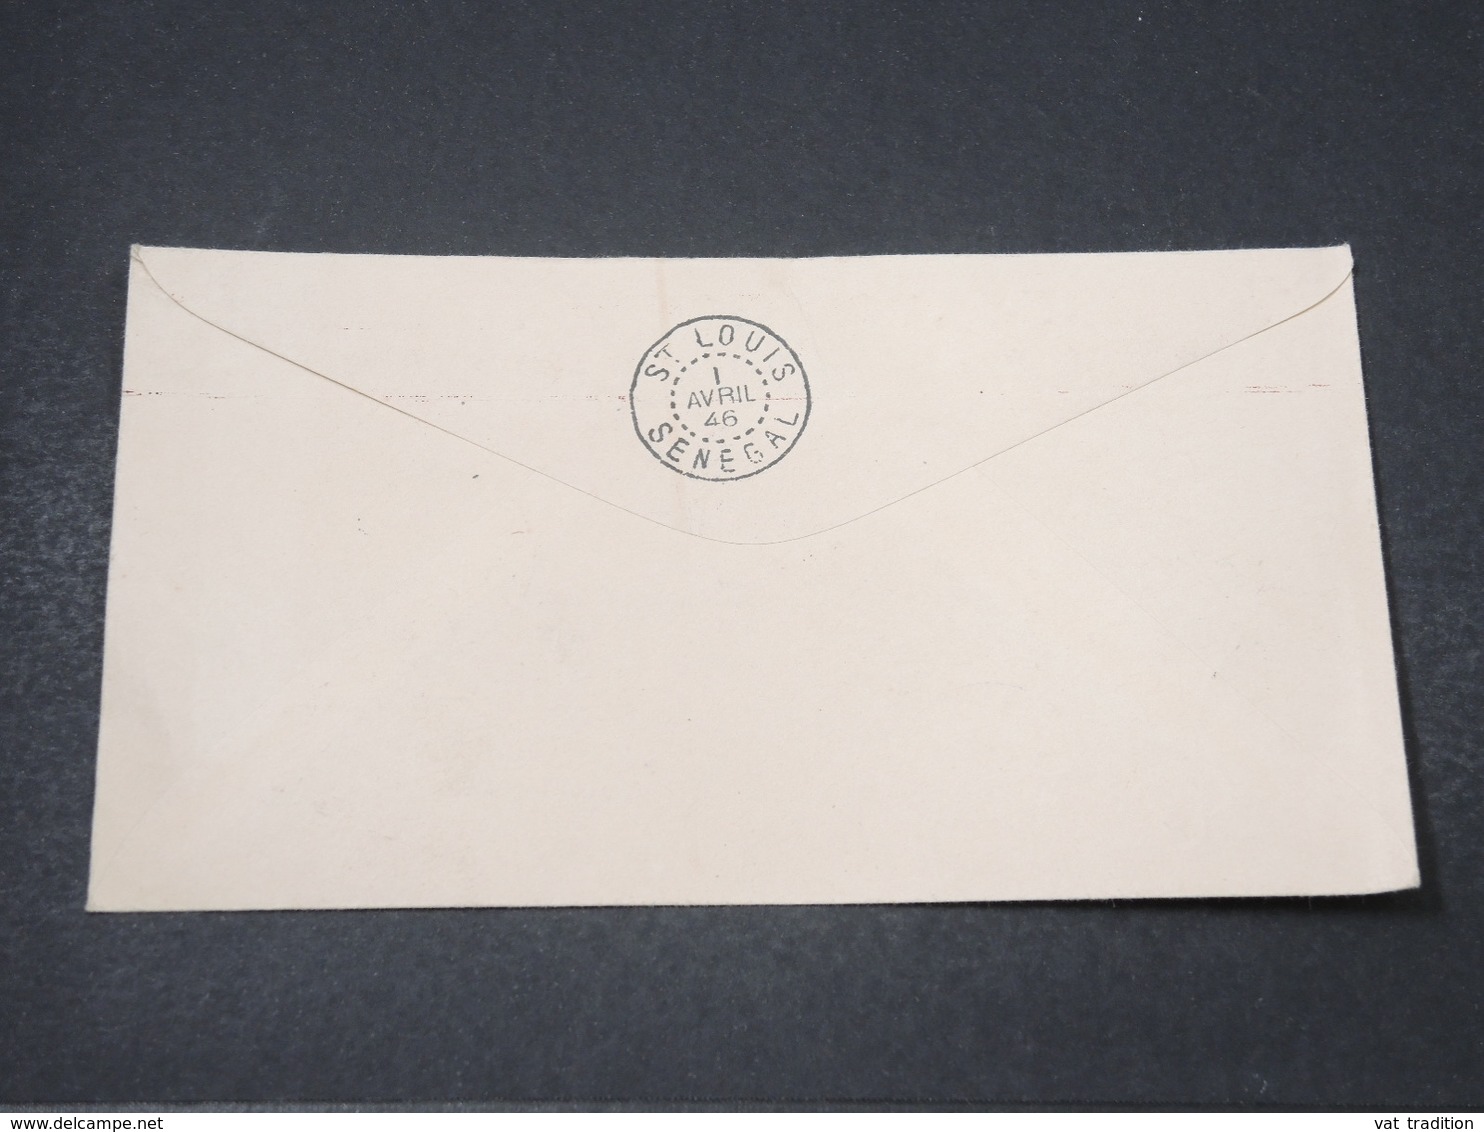 MAURITANIE - Enveloppe De La Foire Exposition Du Trarza à Rosso En 1946 - L 16868 - Briefe U. Dokumente